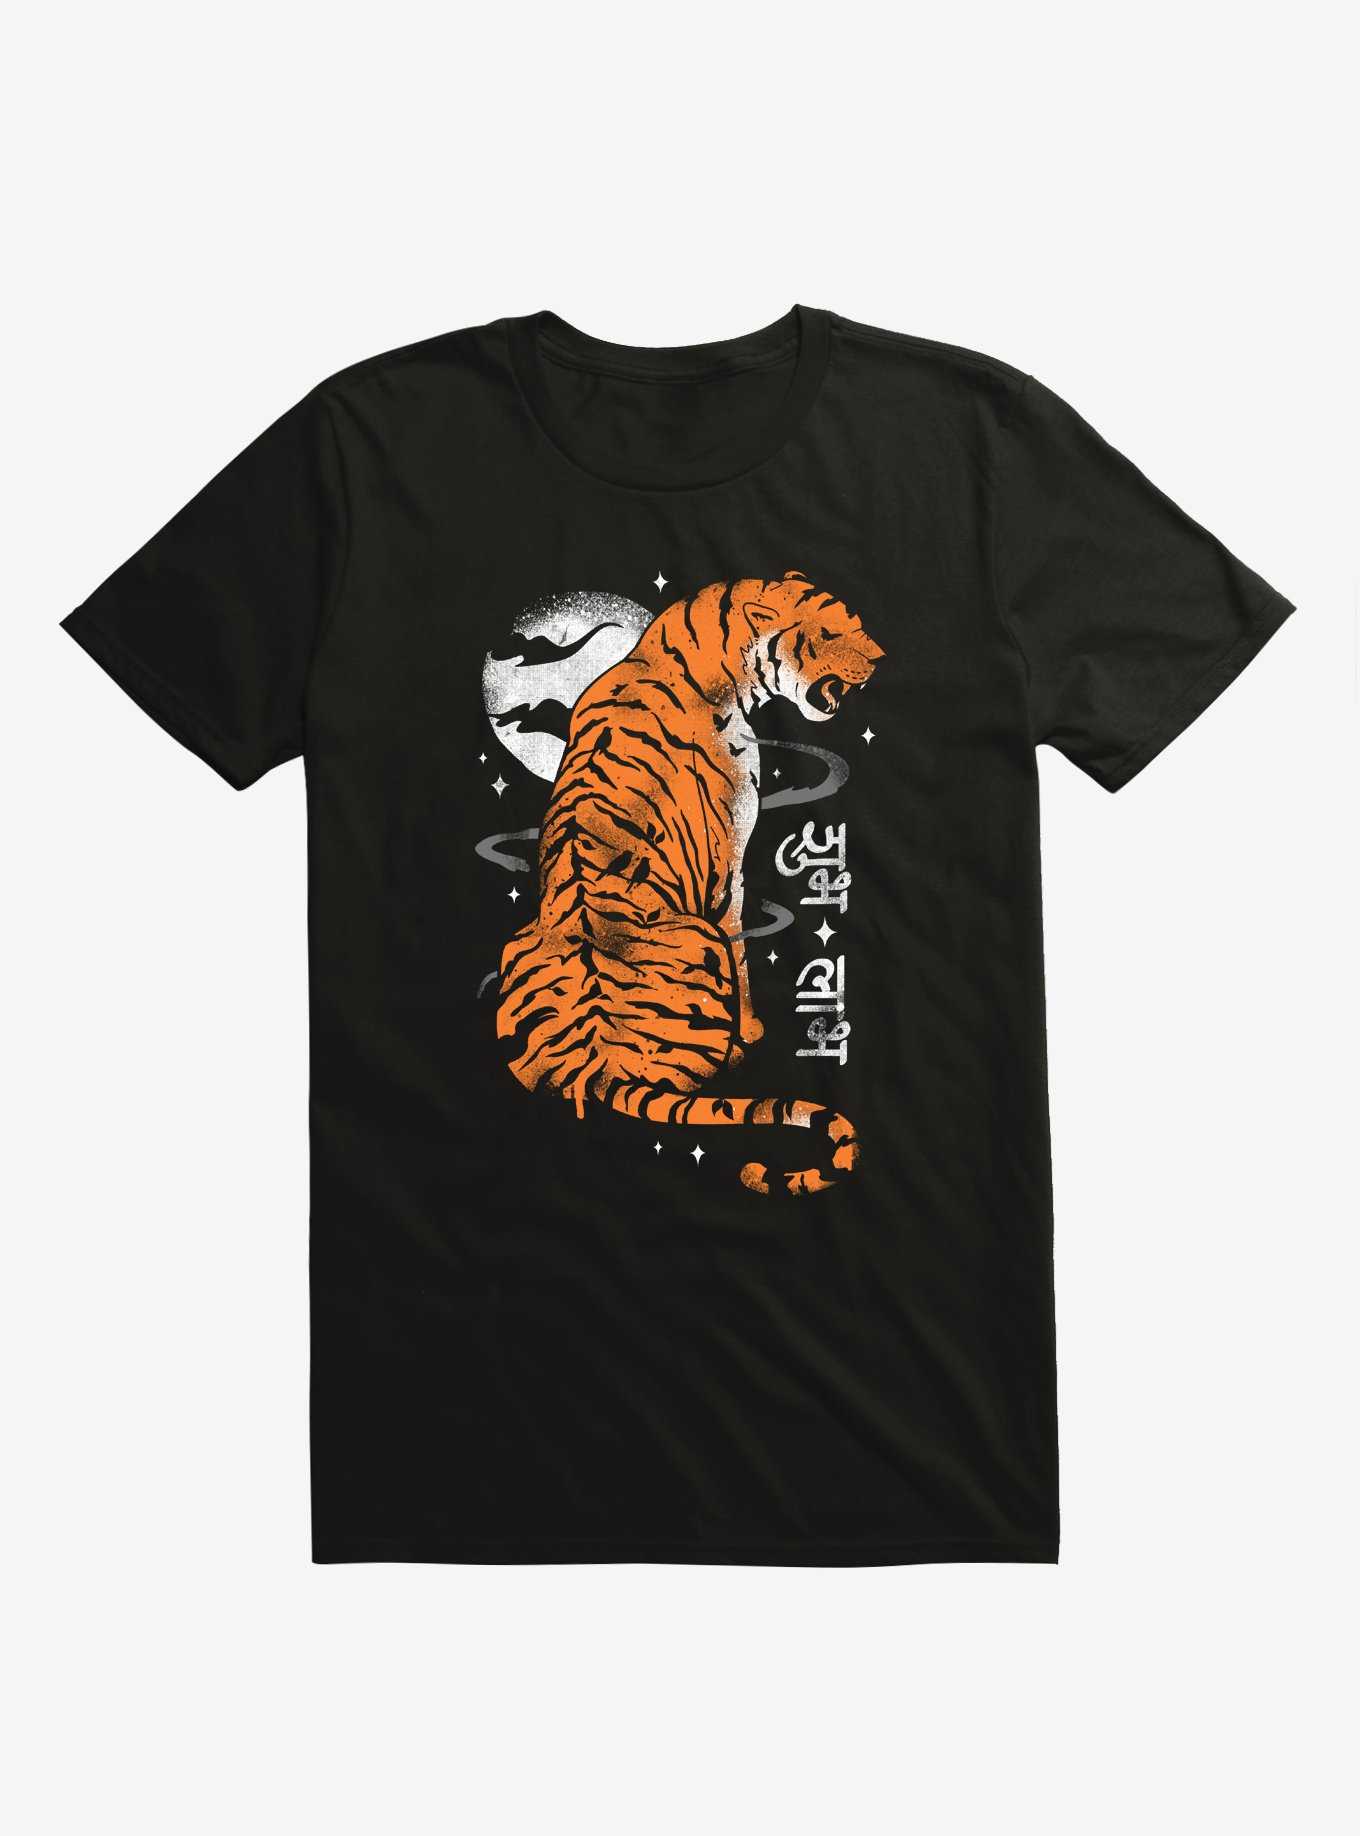 Jewel Of India Tiger Black T-Shirt, , hi-res